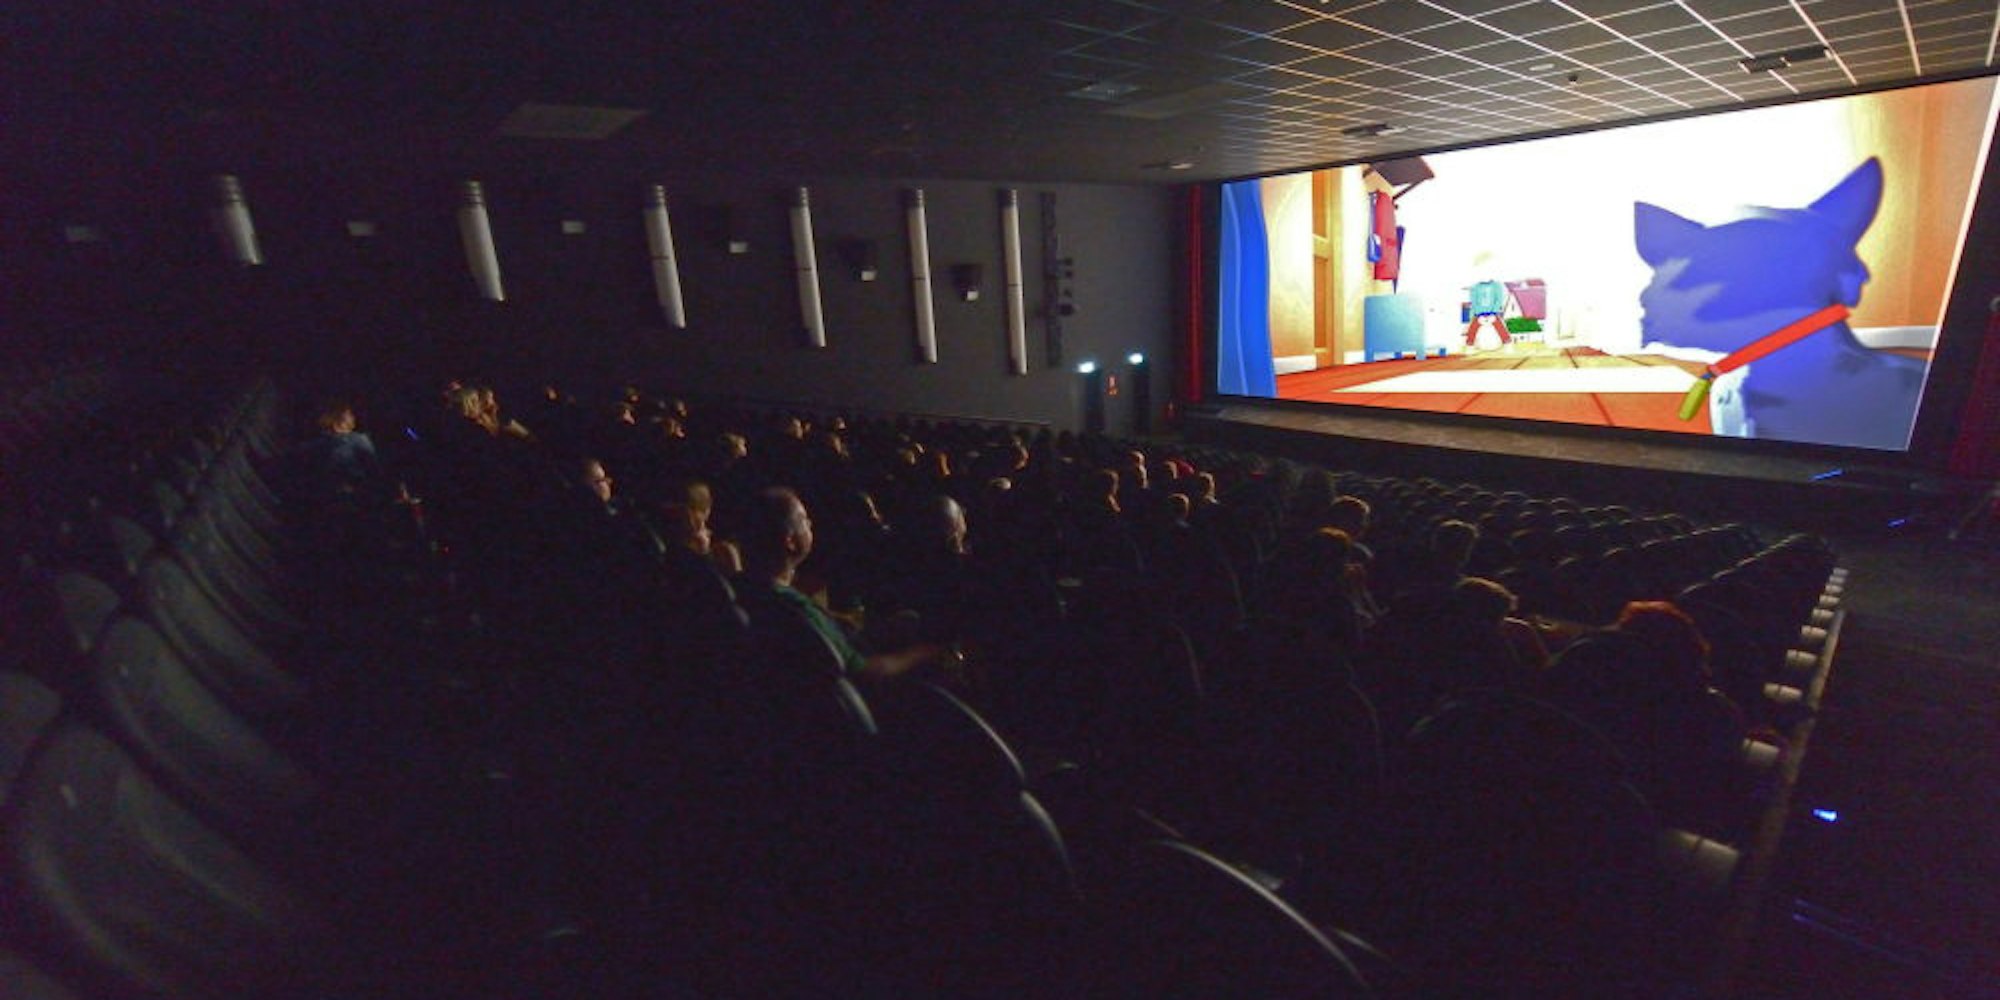 Das Kino-Erlebnis mit der großen Leinwand lockte nach der Wiedereröffnung viele Gäste an.